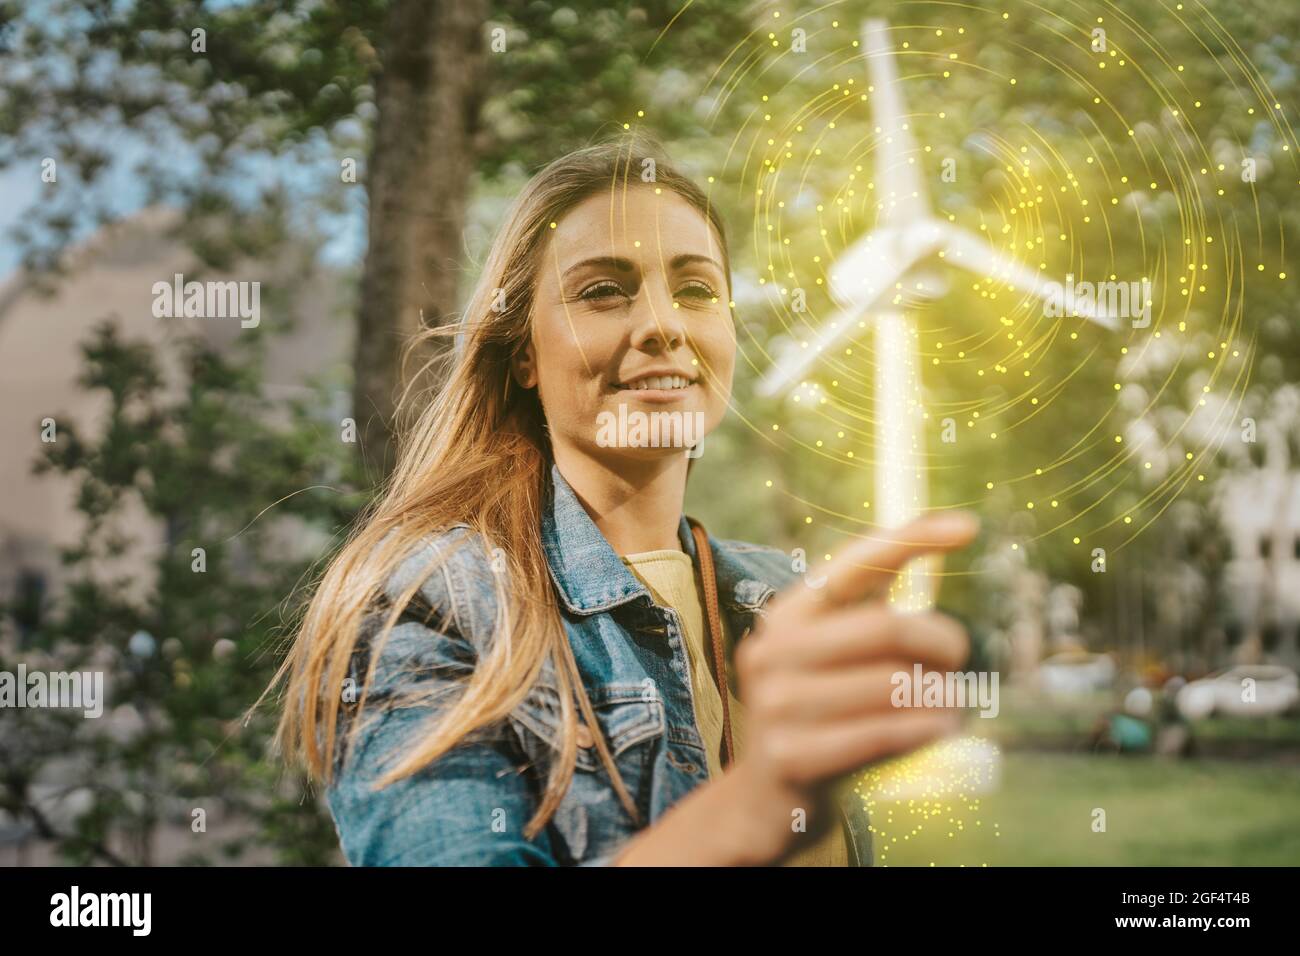 Woman holding glowing windmill model Stock Photo